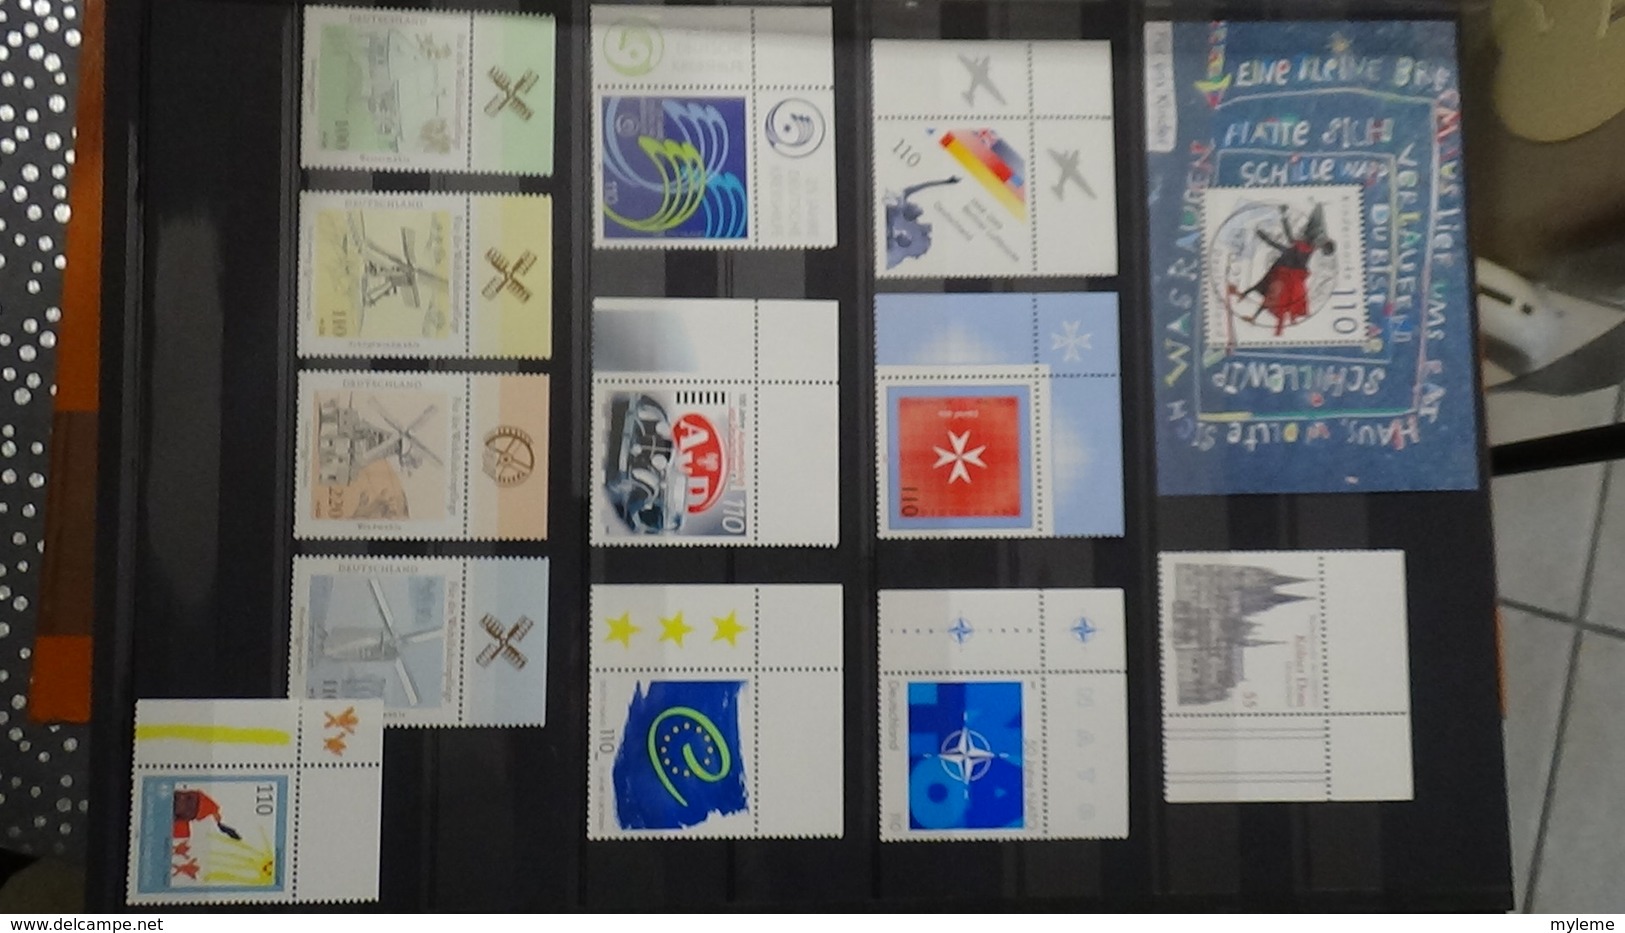 B403 Collection de timbres et blocs ** d'Allemagne. A sasisir !!!